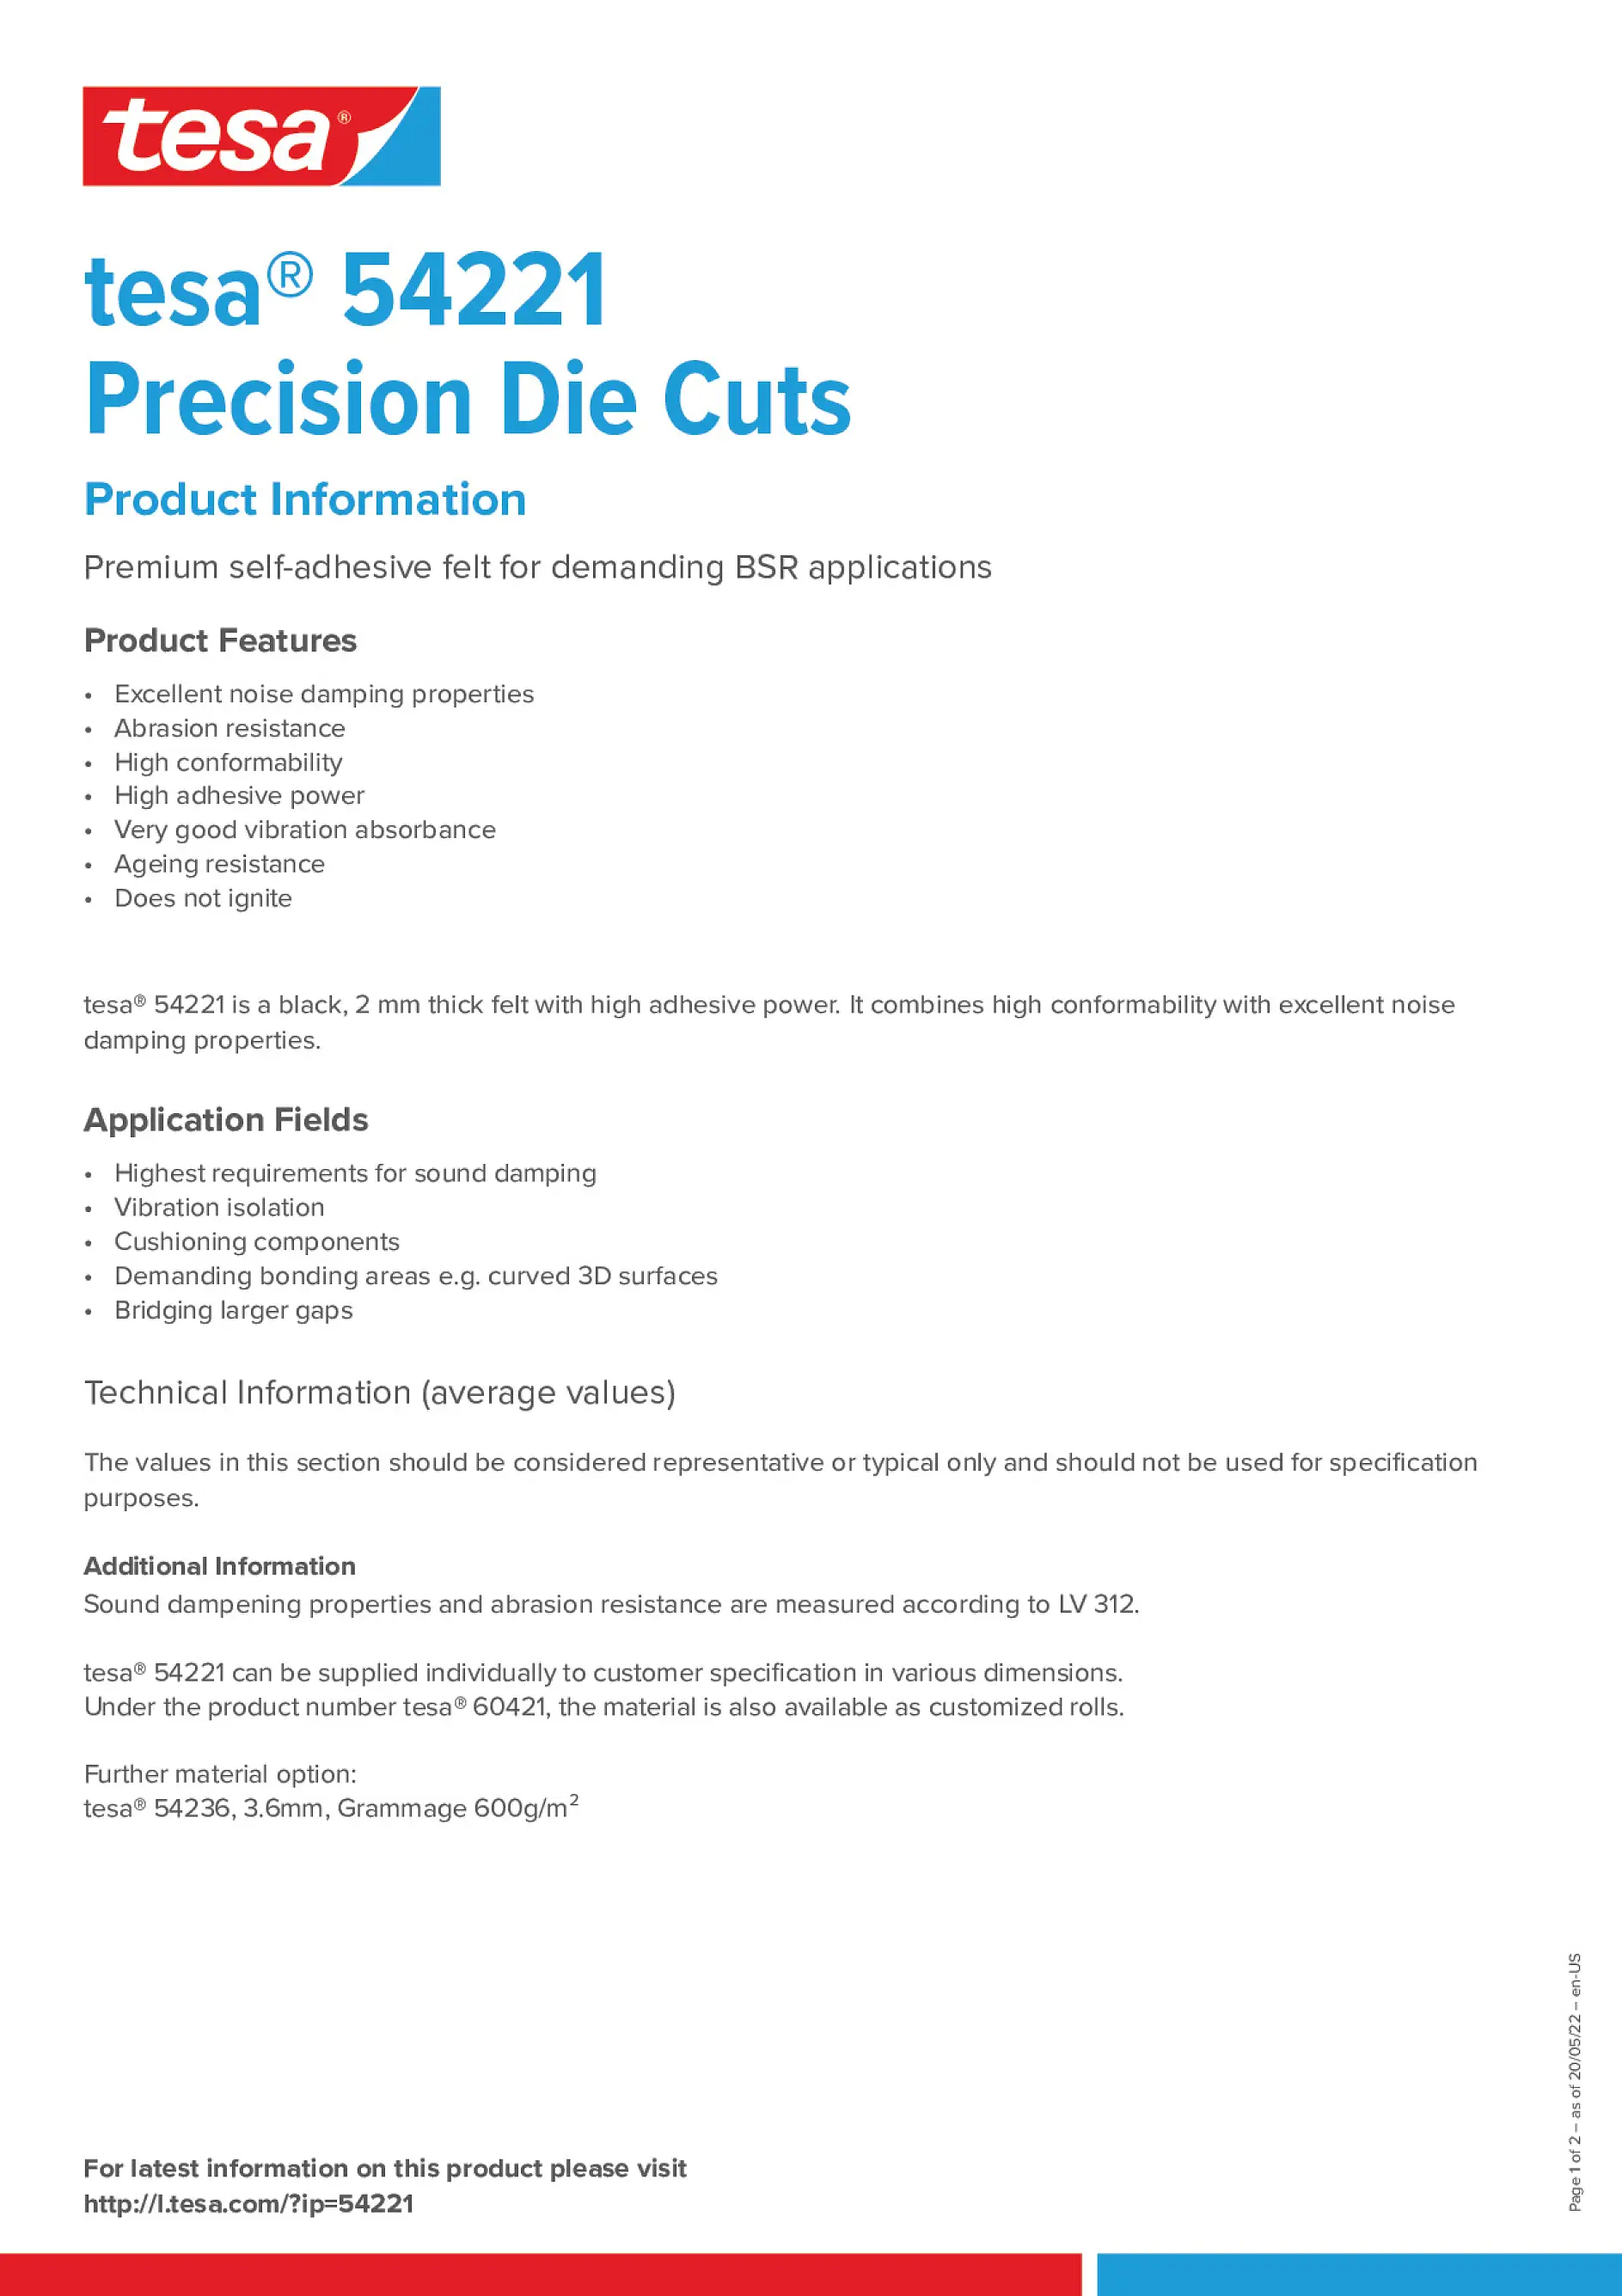 tesa_54221_Precision_Die_Cuts_en-US